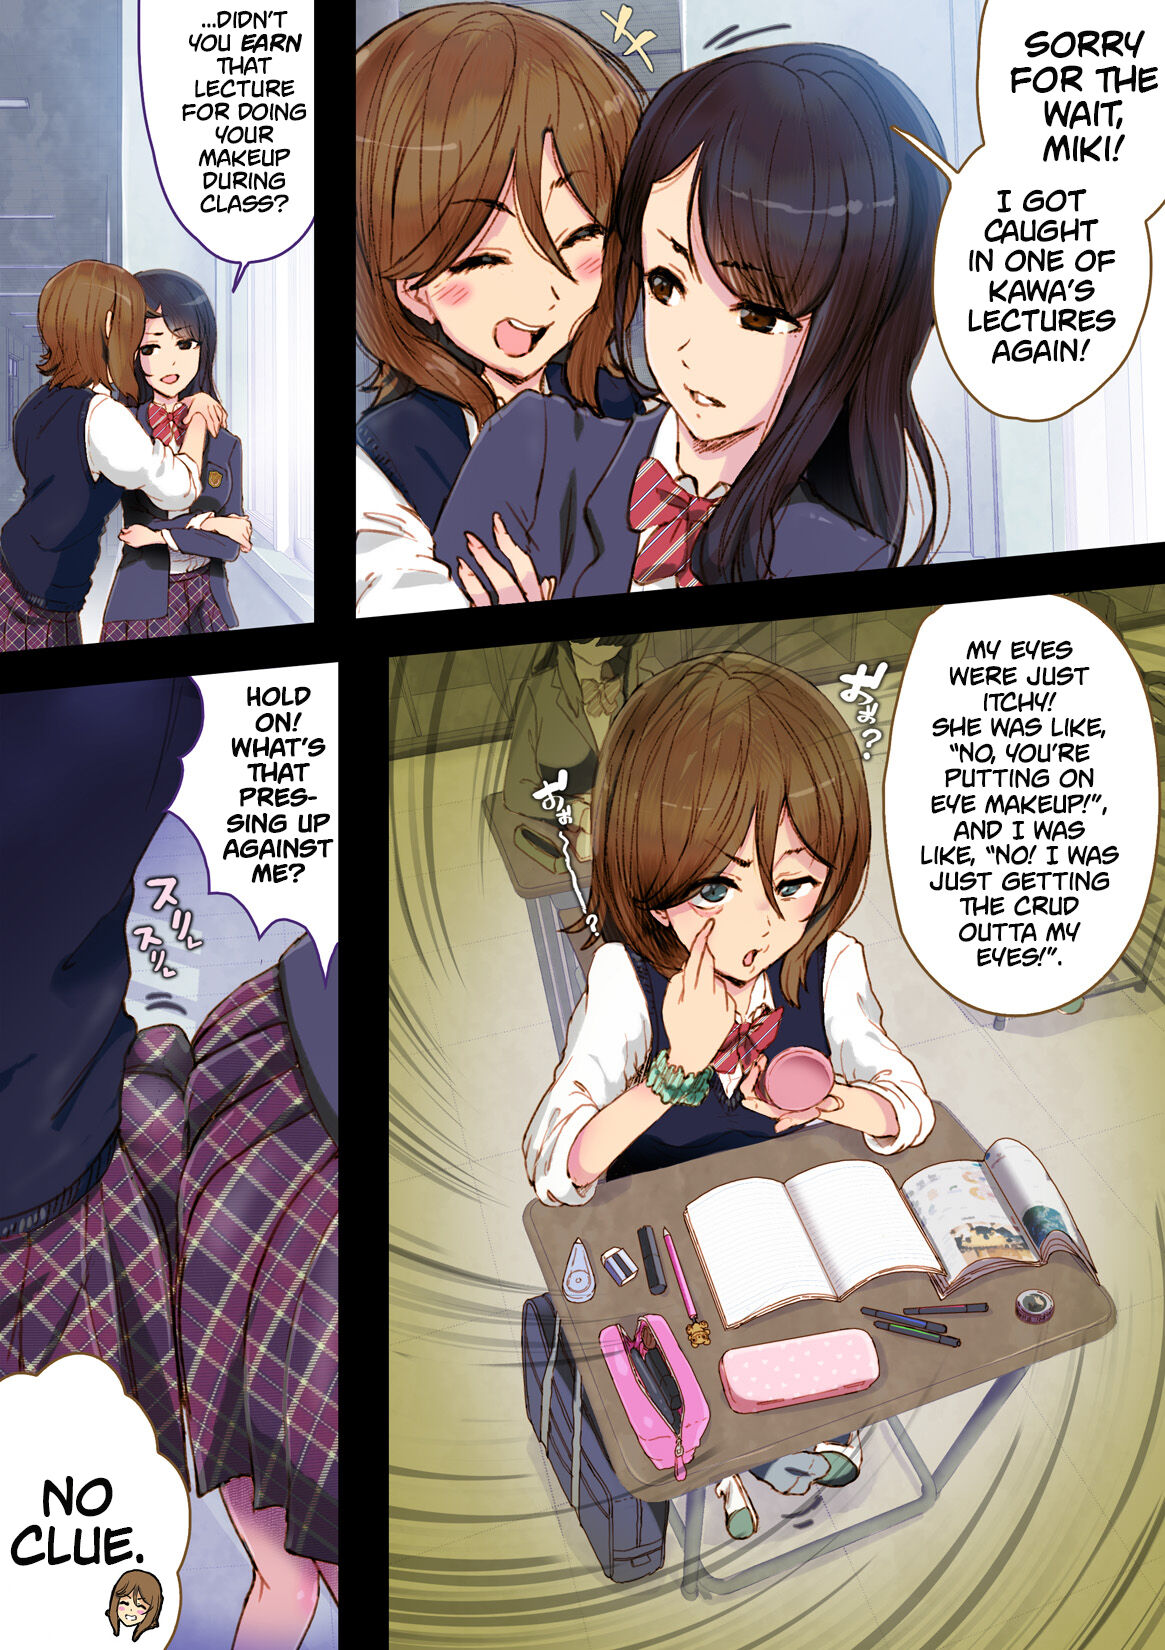 Yuri futanari manga